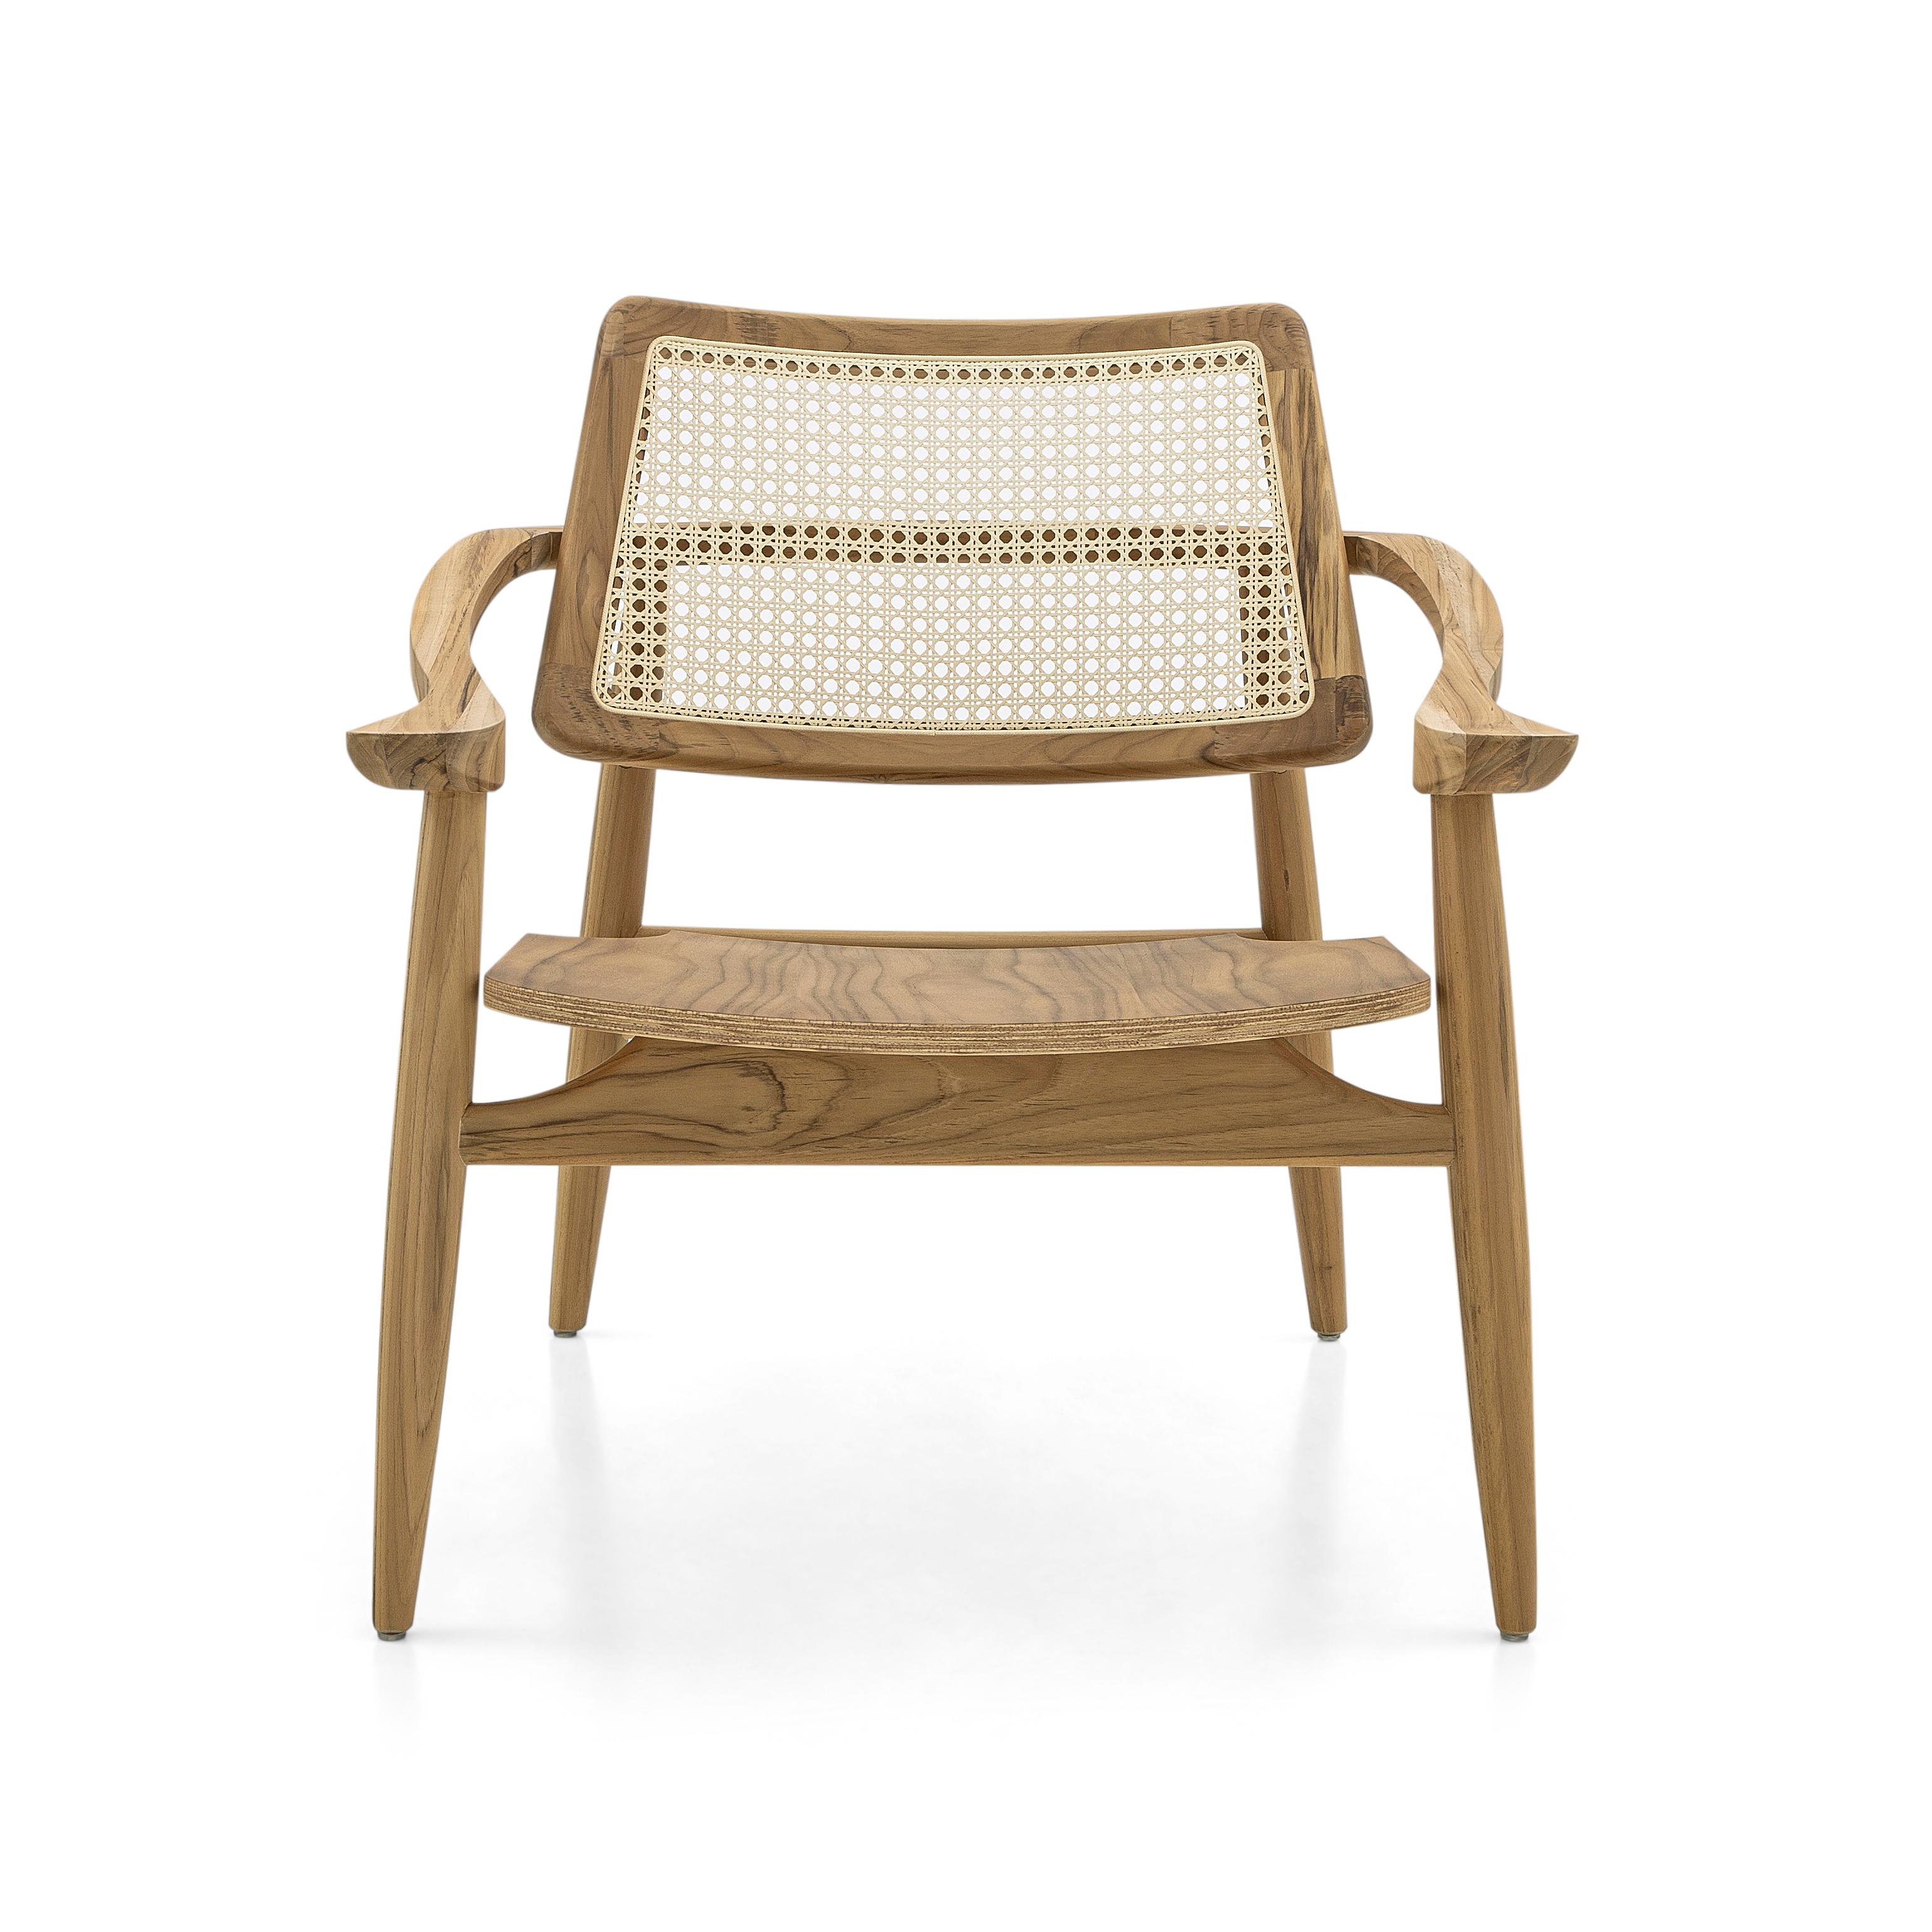 L'équipe de designers d'Uultis a créé le fauteuil Eleg avec un dossier en forme de canne incurvée et une assise en bois dans une finition teck pour tous ceux qui recherchent un look élégant mais vintage dans leur chambre à coucher, leur salon ou